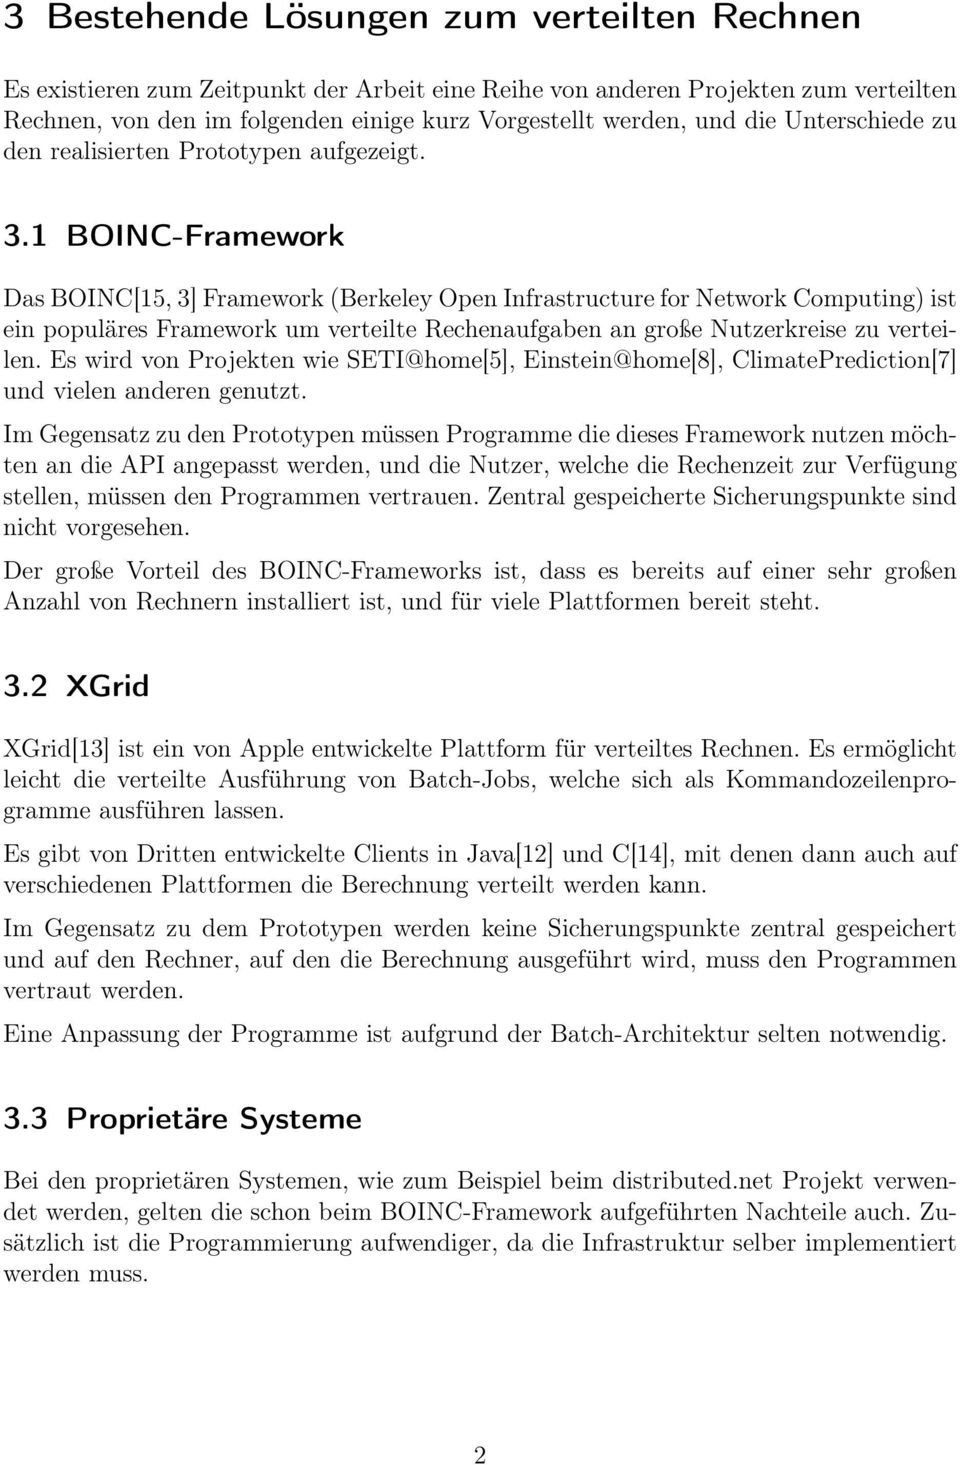 1 BOINC-Framework Das BOINC[15, 3] Framework (Berkeley Open Infrastructure for Network Computing) ist ein populäres Framework um verteilte Rechenaufgaben an große Nutzerkreise zu verteilen.